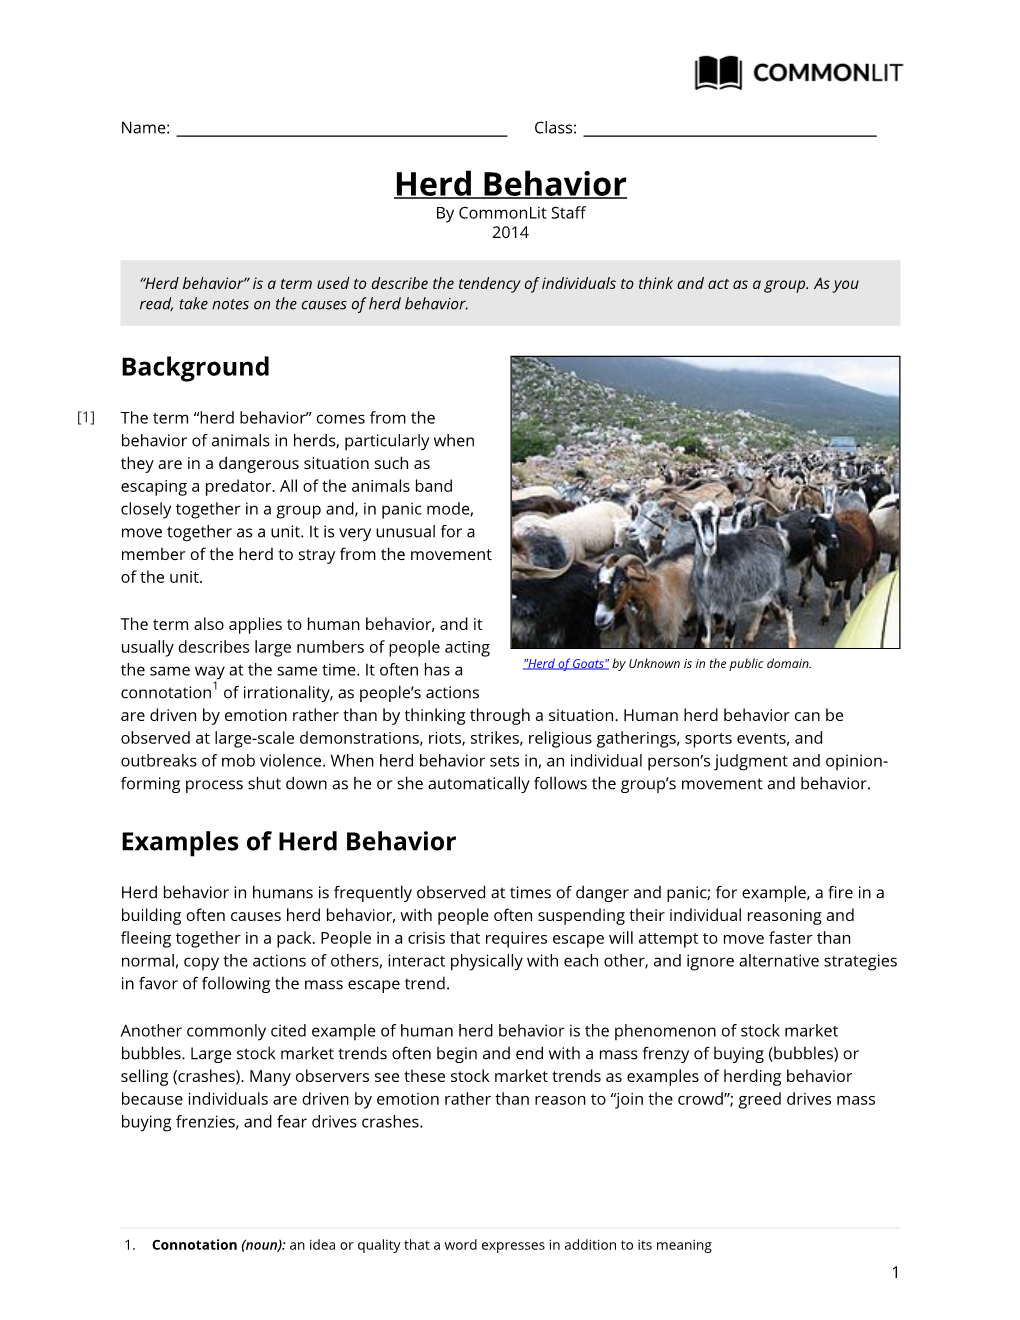 Herd Behavior by Commonlit Staff 2014